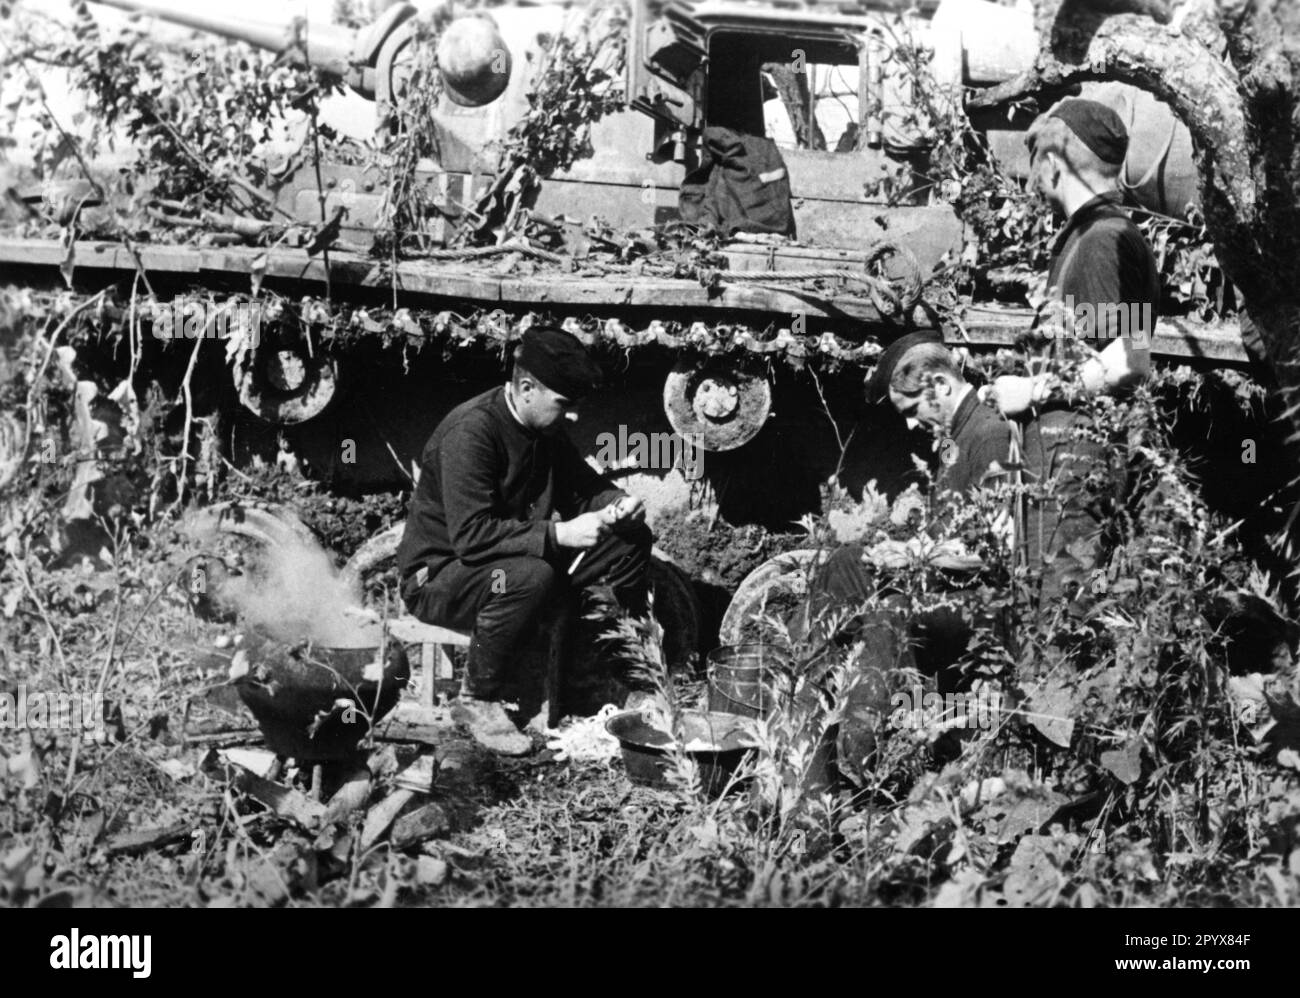 Équipage de réservoir d'un Panzer III manger au sud-est de Rzhev. Photo Ulrich [traduction automatique] Banque D'Images